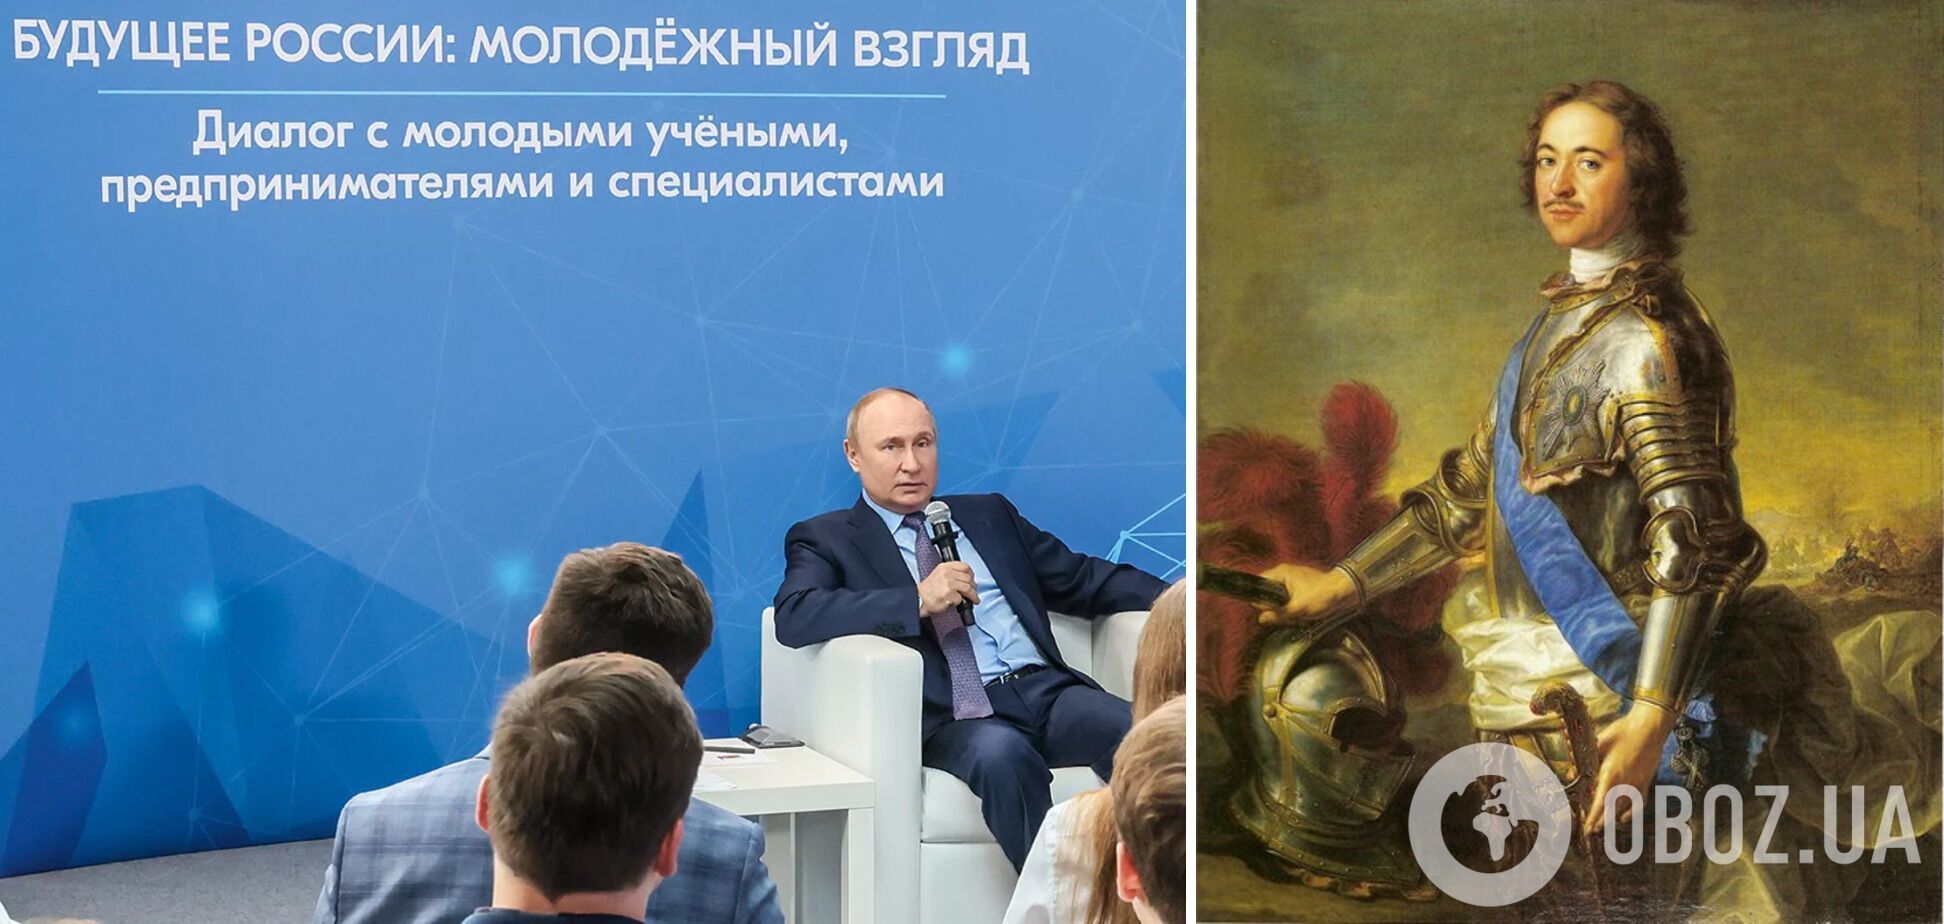 Путін порівняв себе з Петром І і зізнався, що його мета в Україні – відновлення РФ як імперської держави